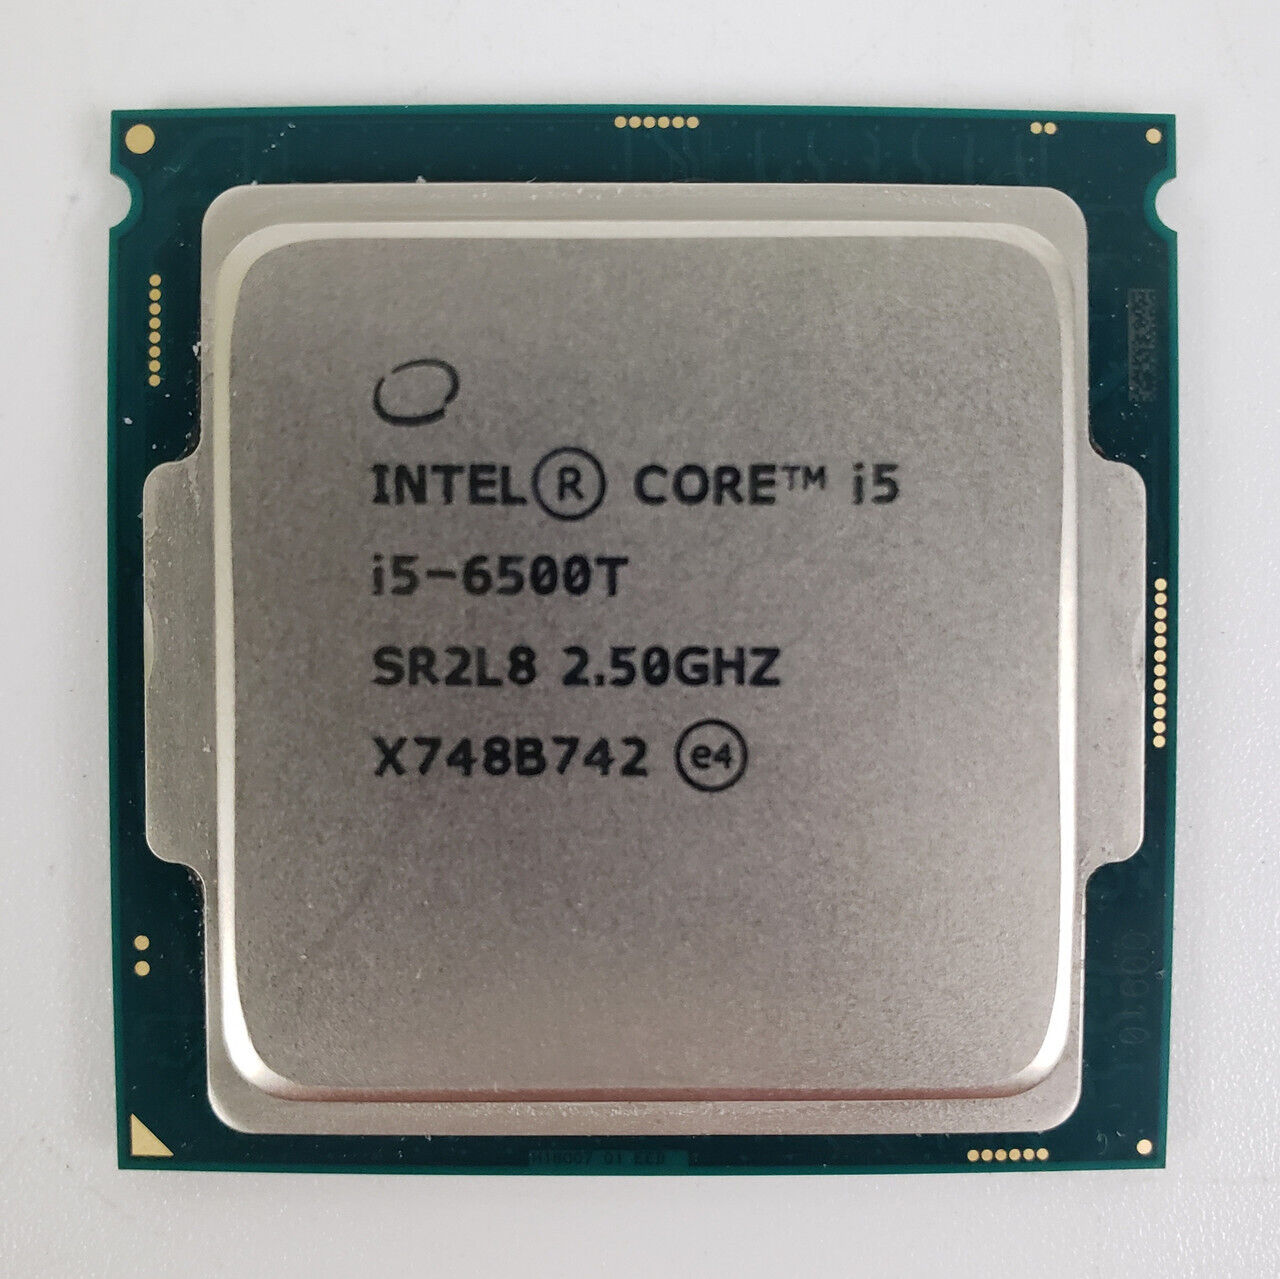 Intel Core i5-6500T SR2L8 2.50GHz Processor | Grade A